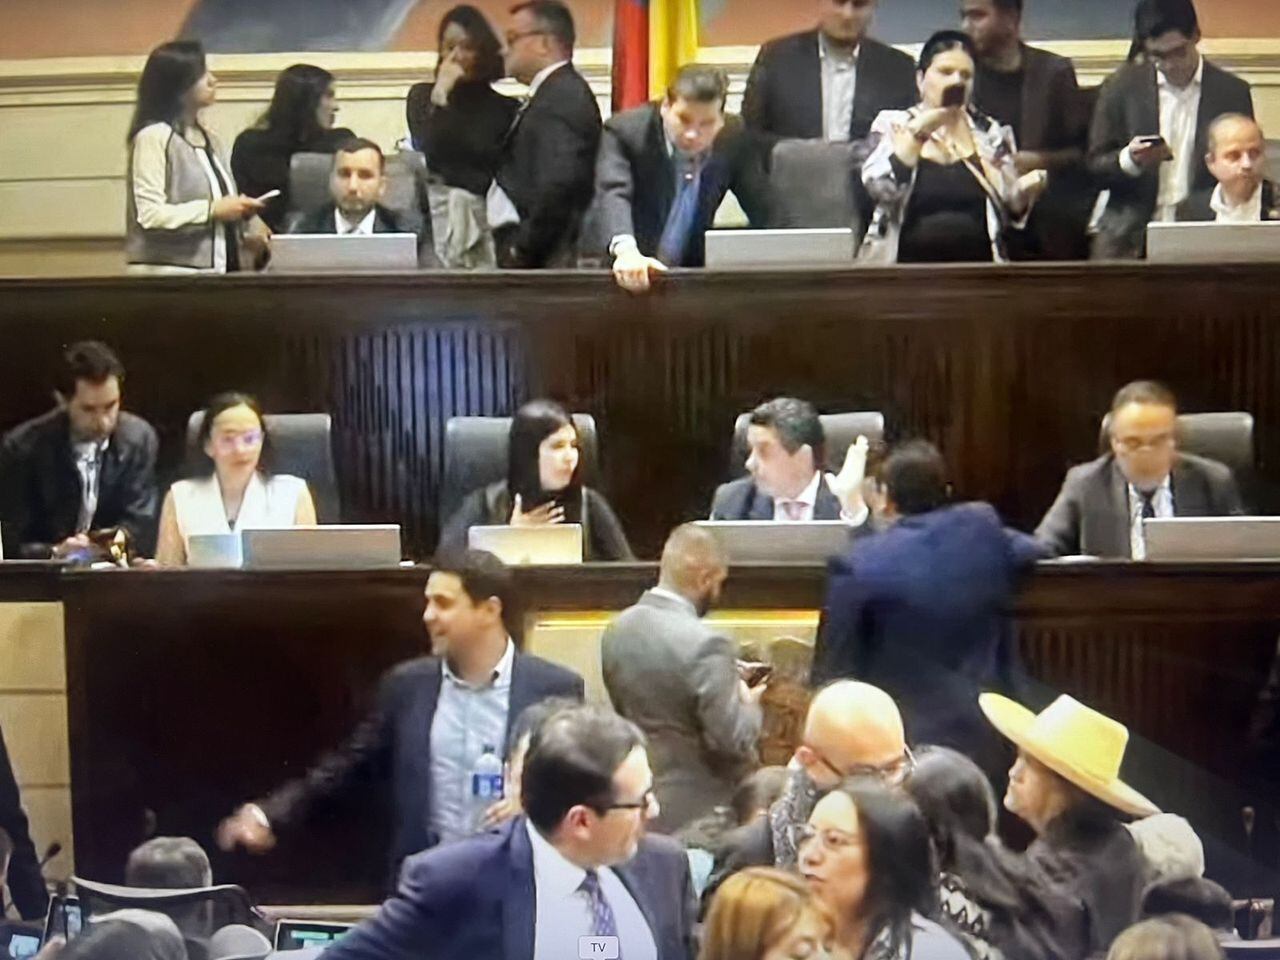 Cuando Andrés Calle llegó al recinto, tuvo que pedir orden para poder seguir adelante con la plenaria.